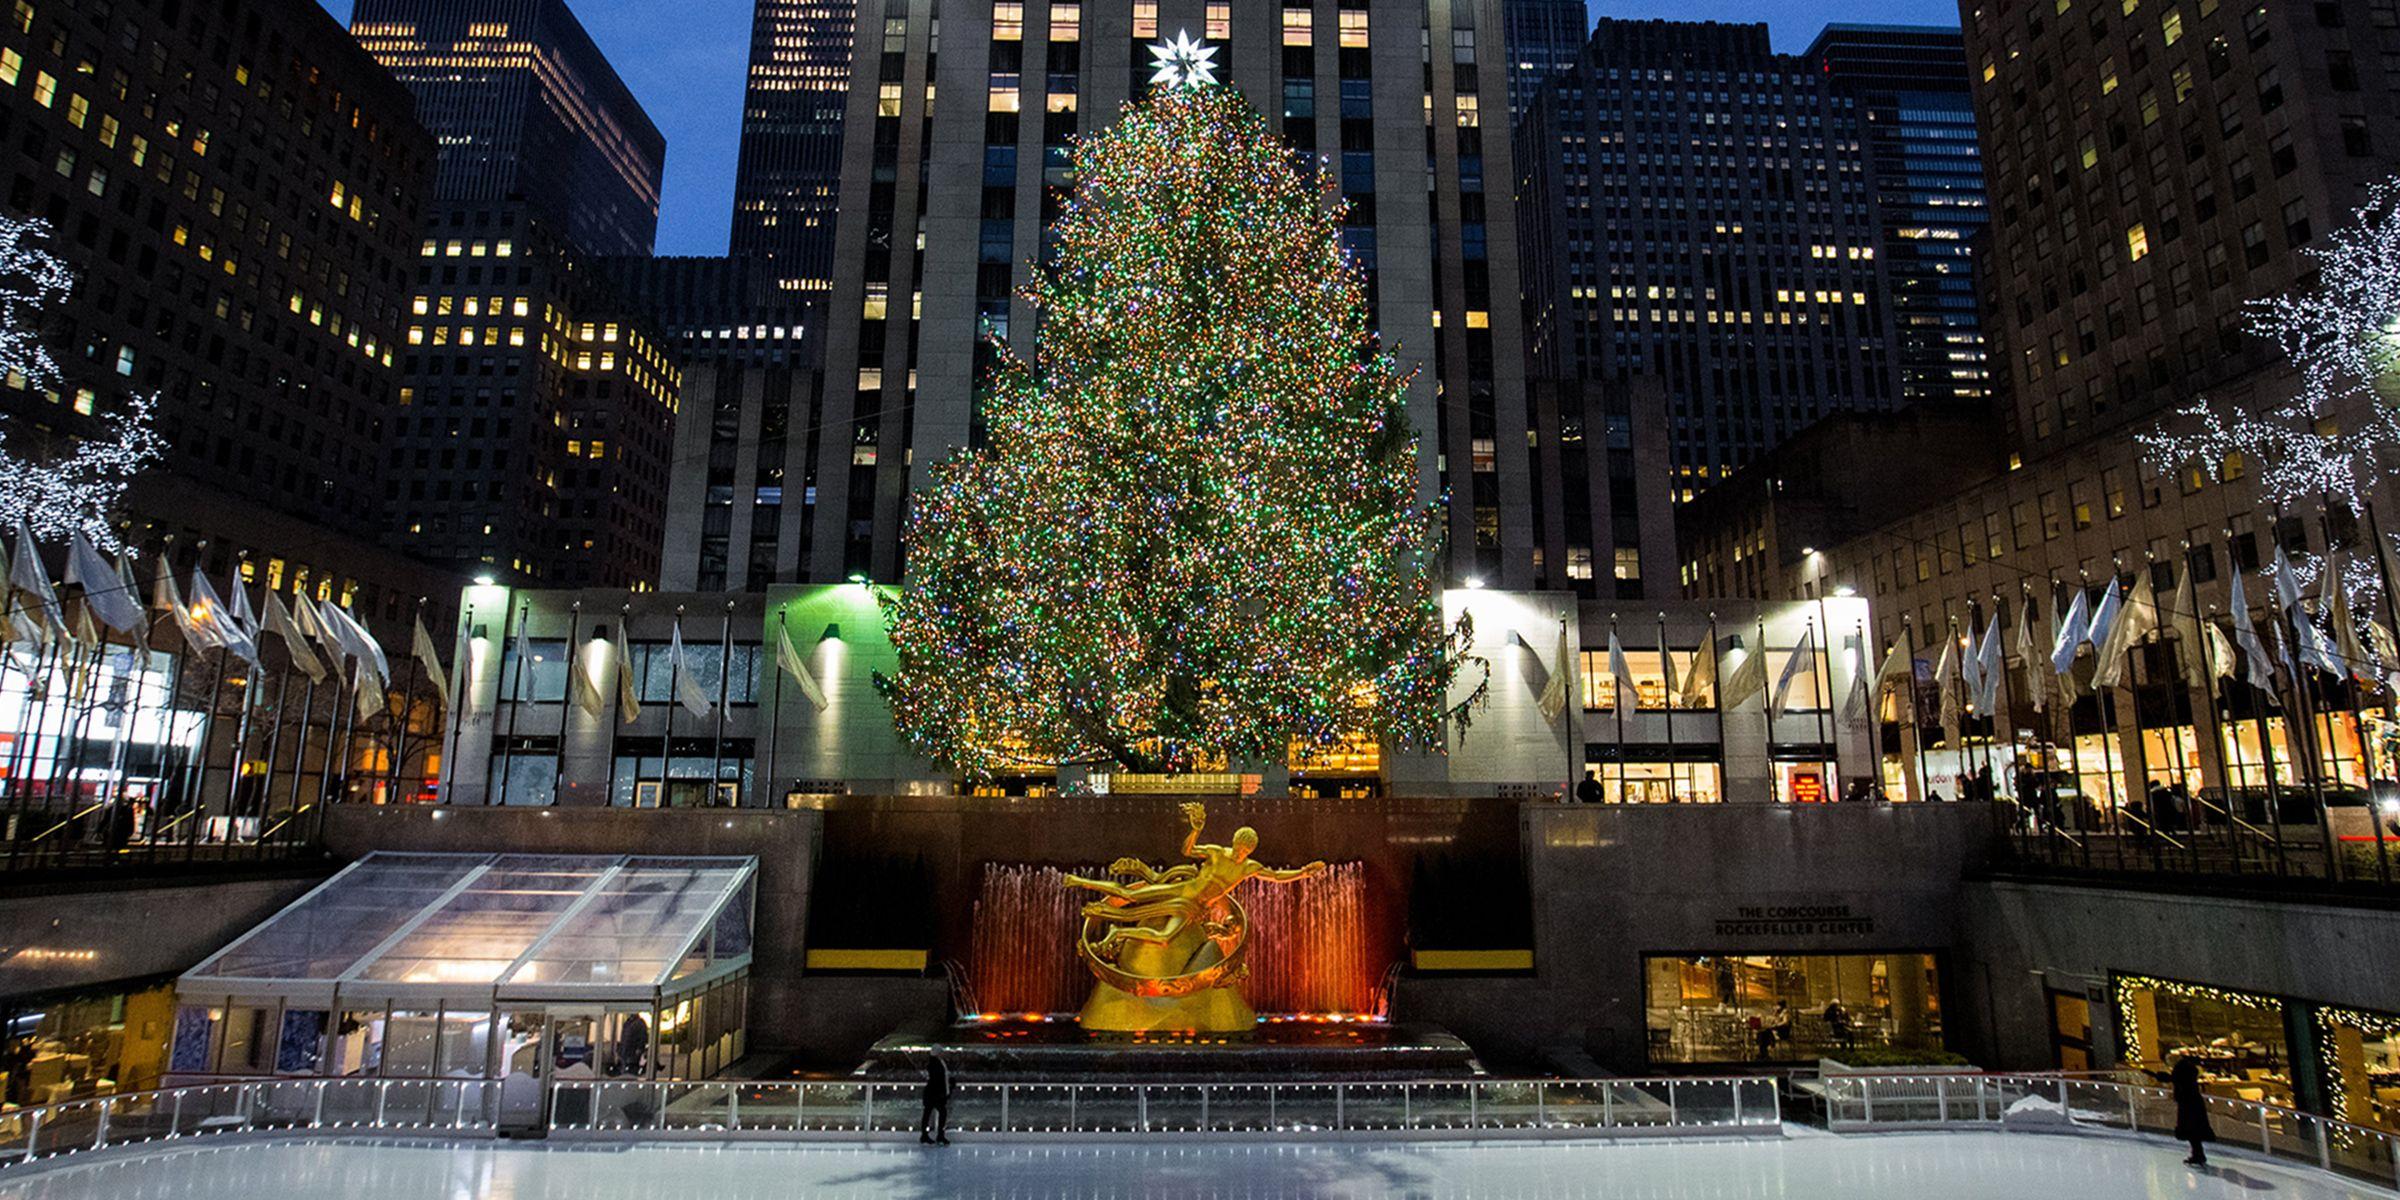 Rockefeller Center Christmas tree for 2018 has been chosen! Here's